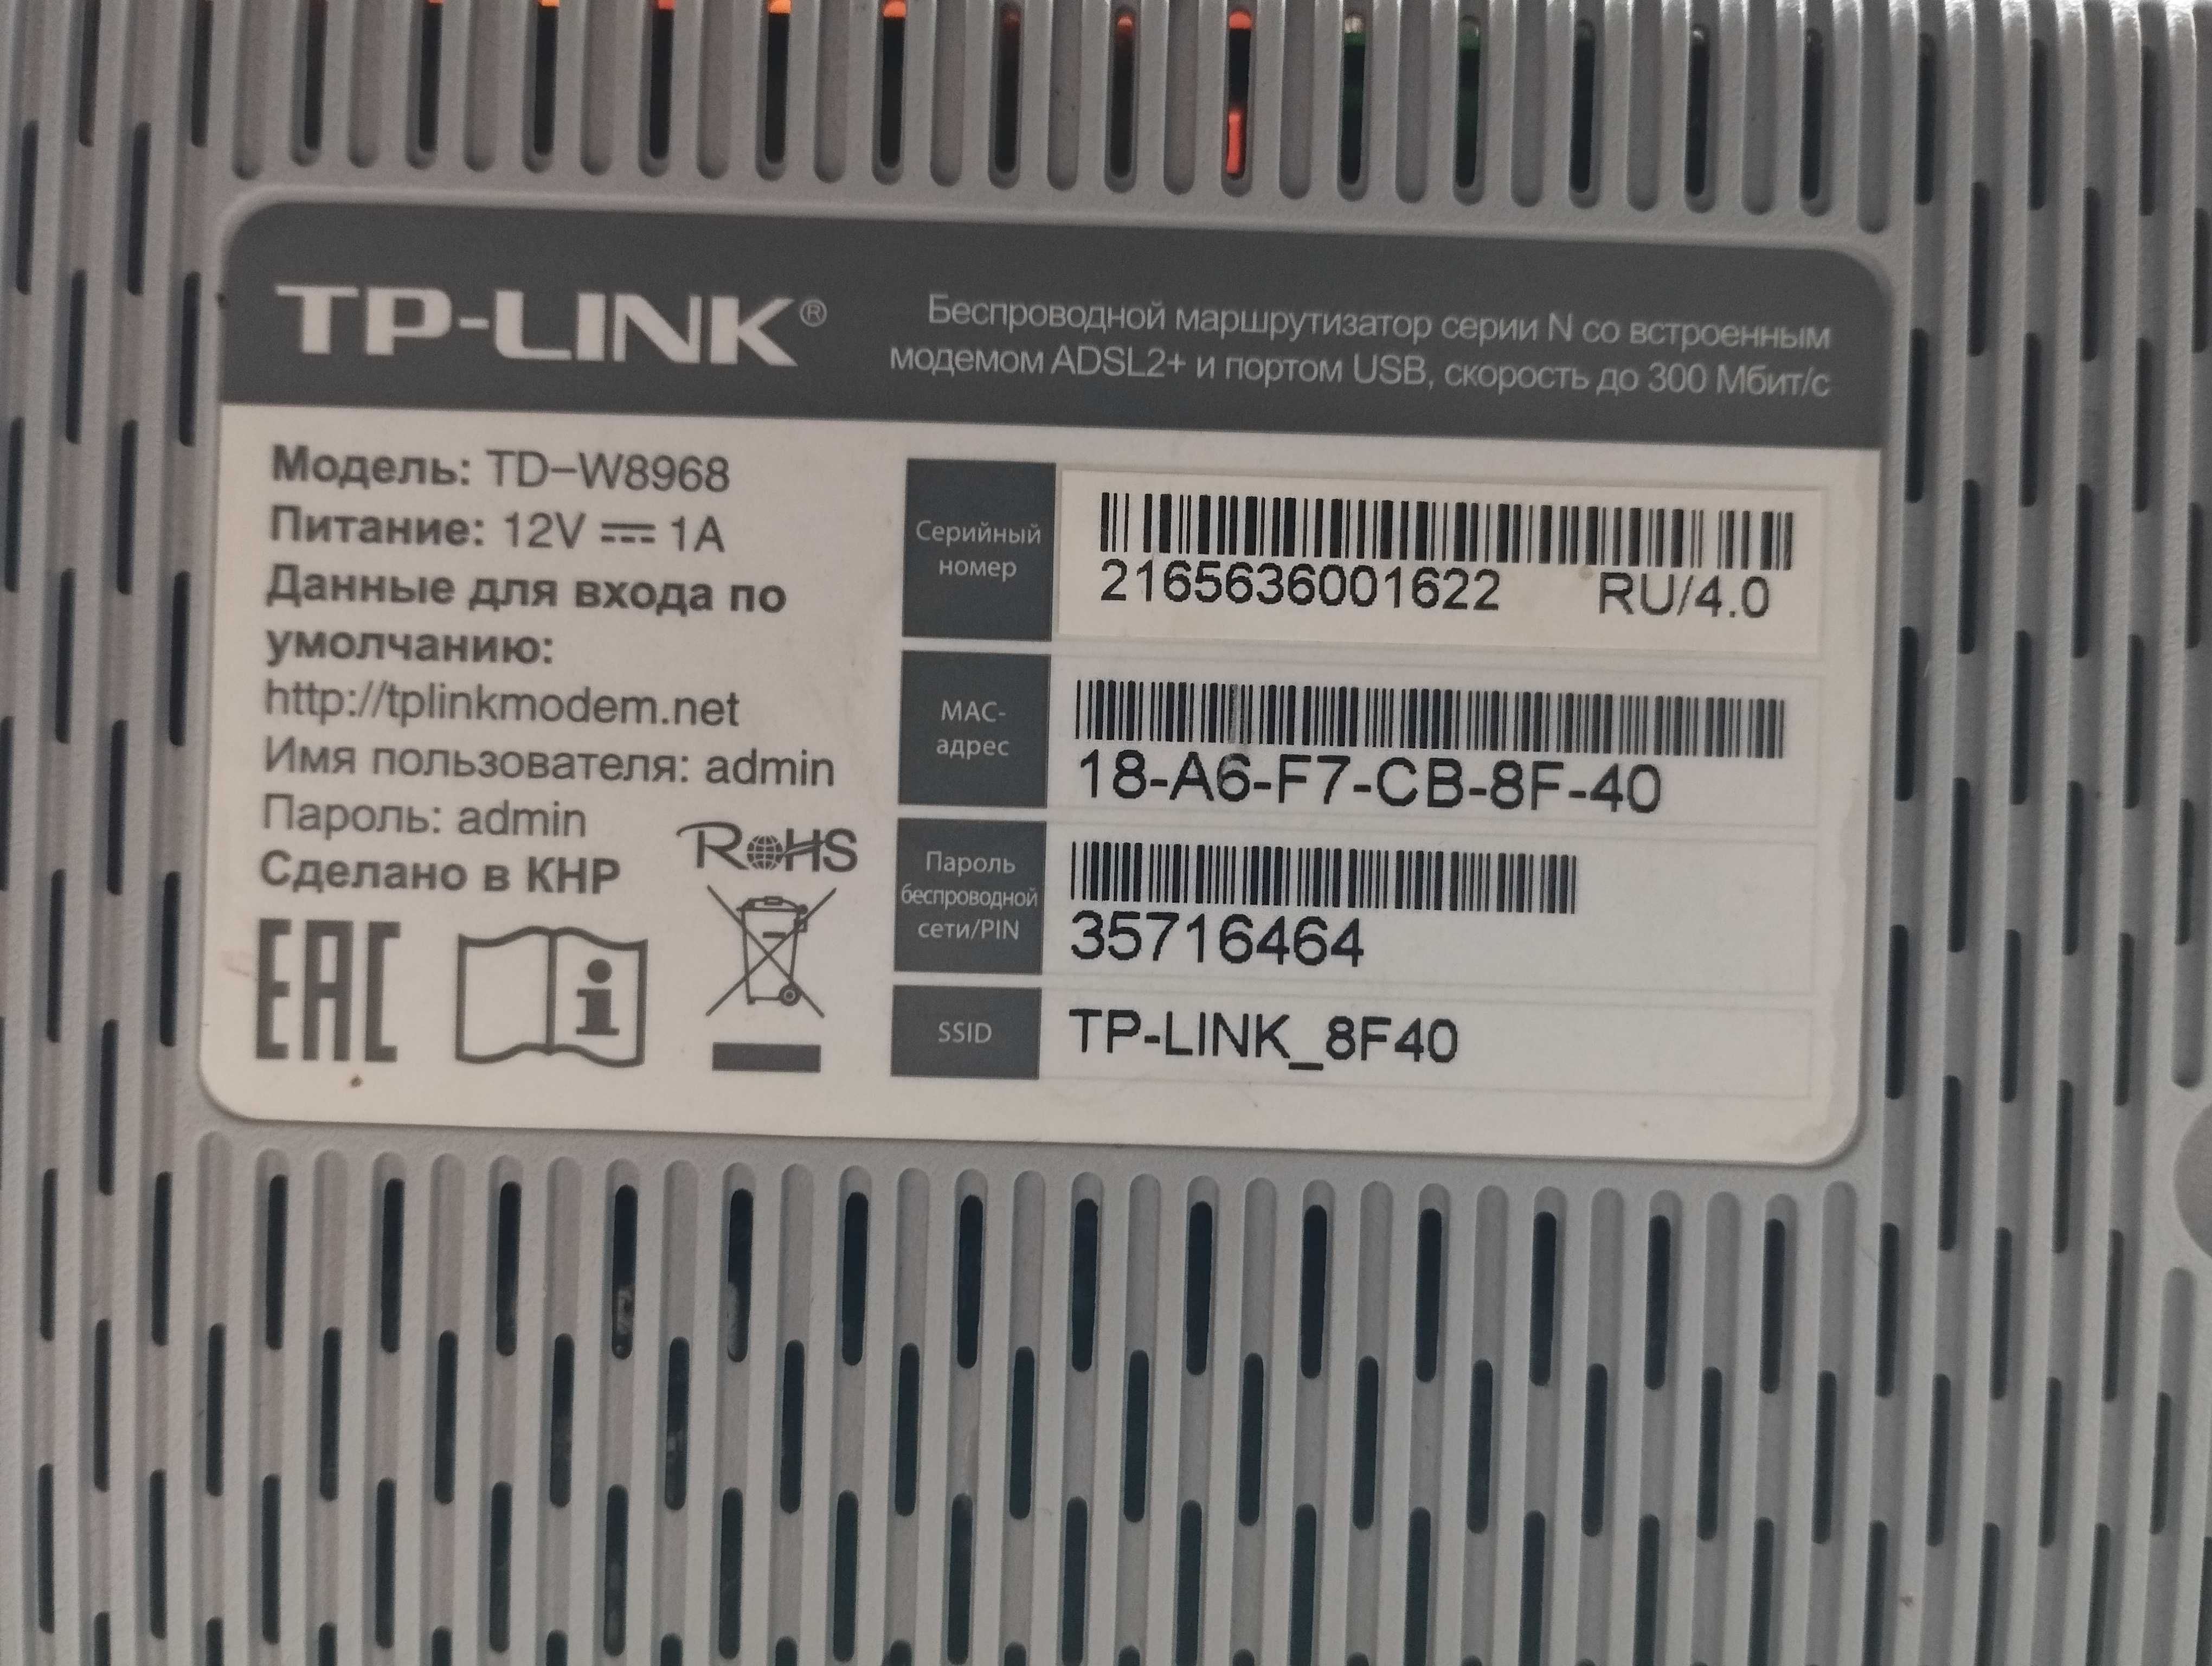 WI-FI РОУТЕР TP-LINK TD-W8968 модем modem